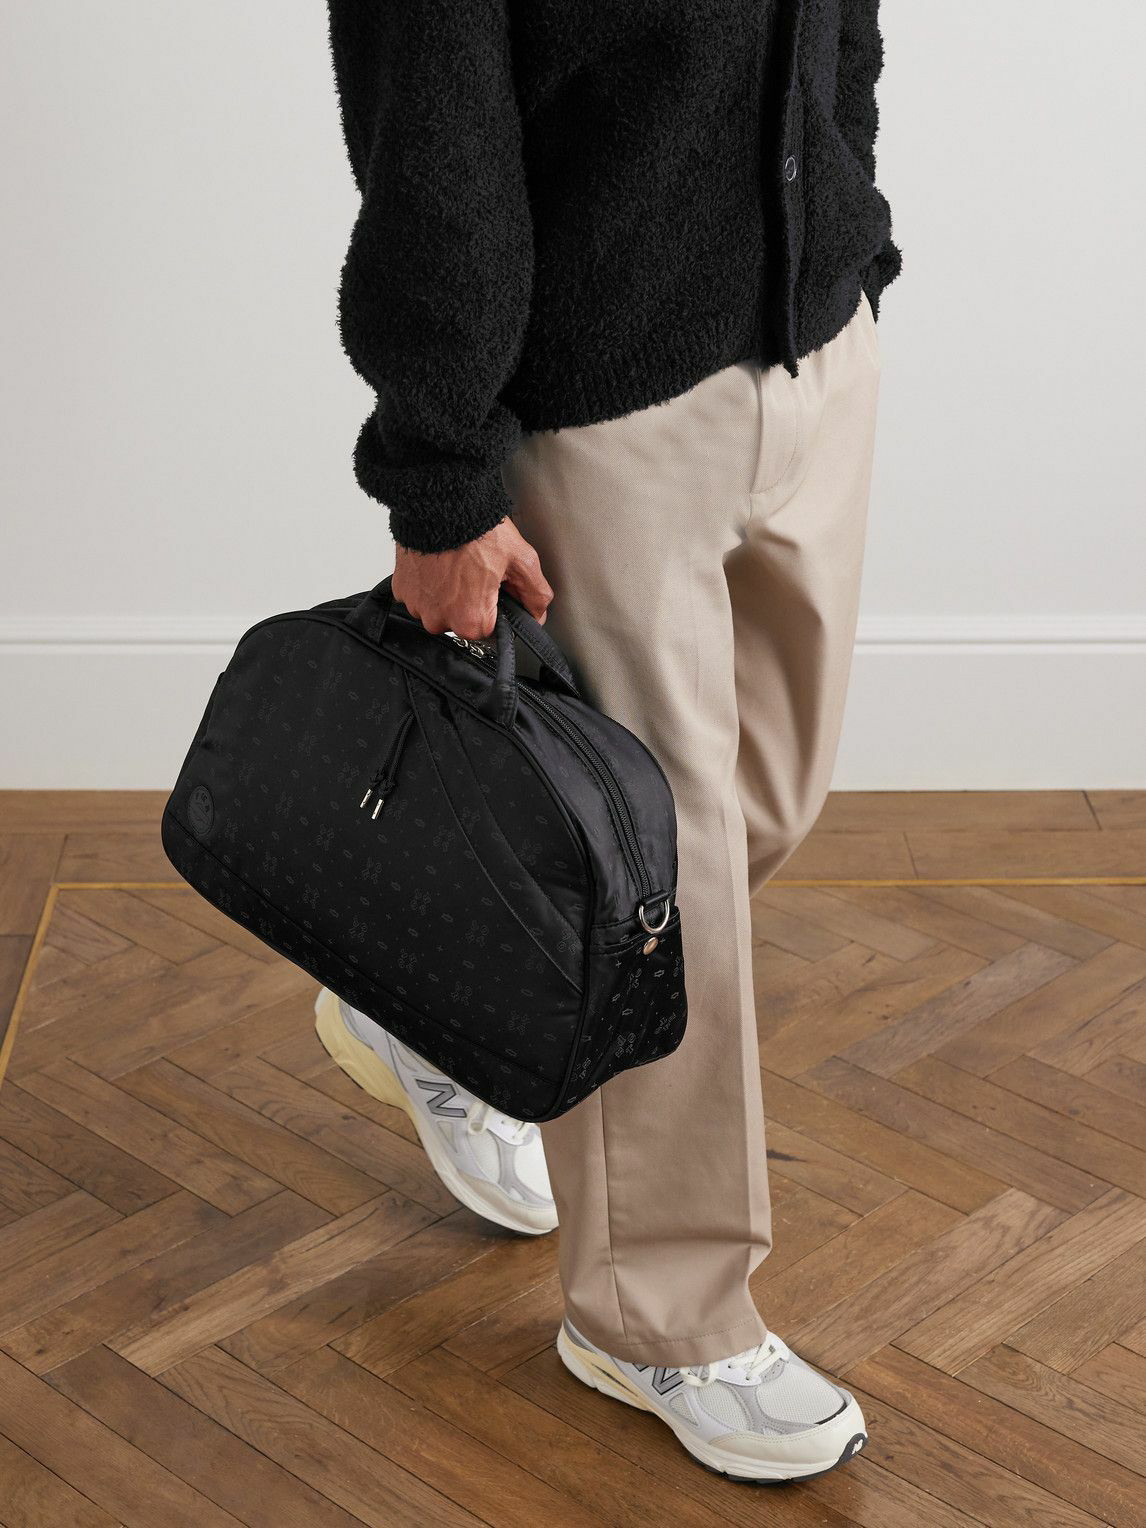 PORTER-YOSHIDA & CO Monogrammed Nylon Backpack for Men